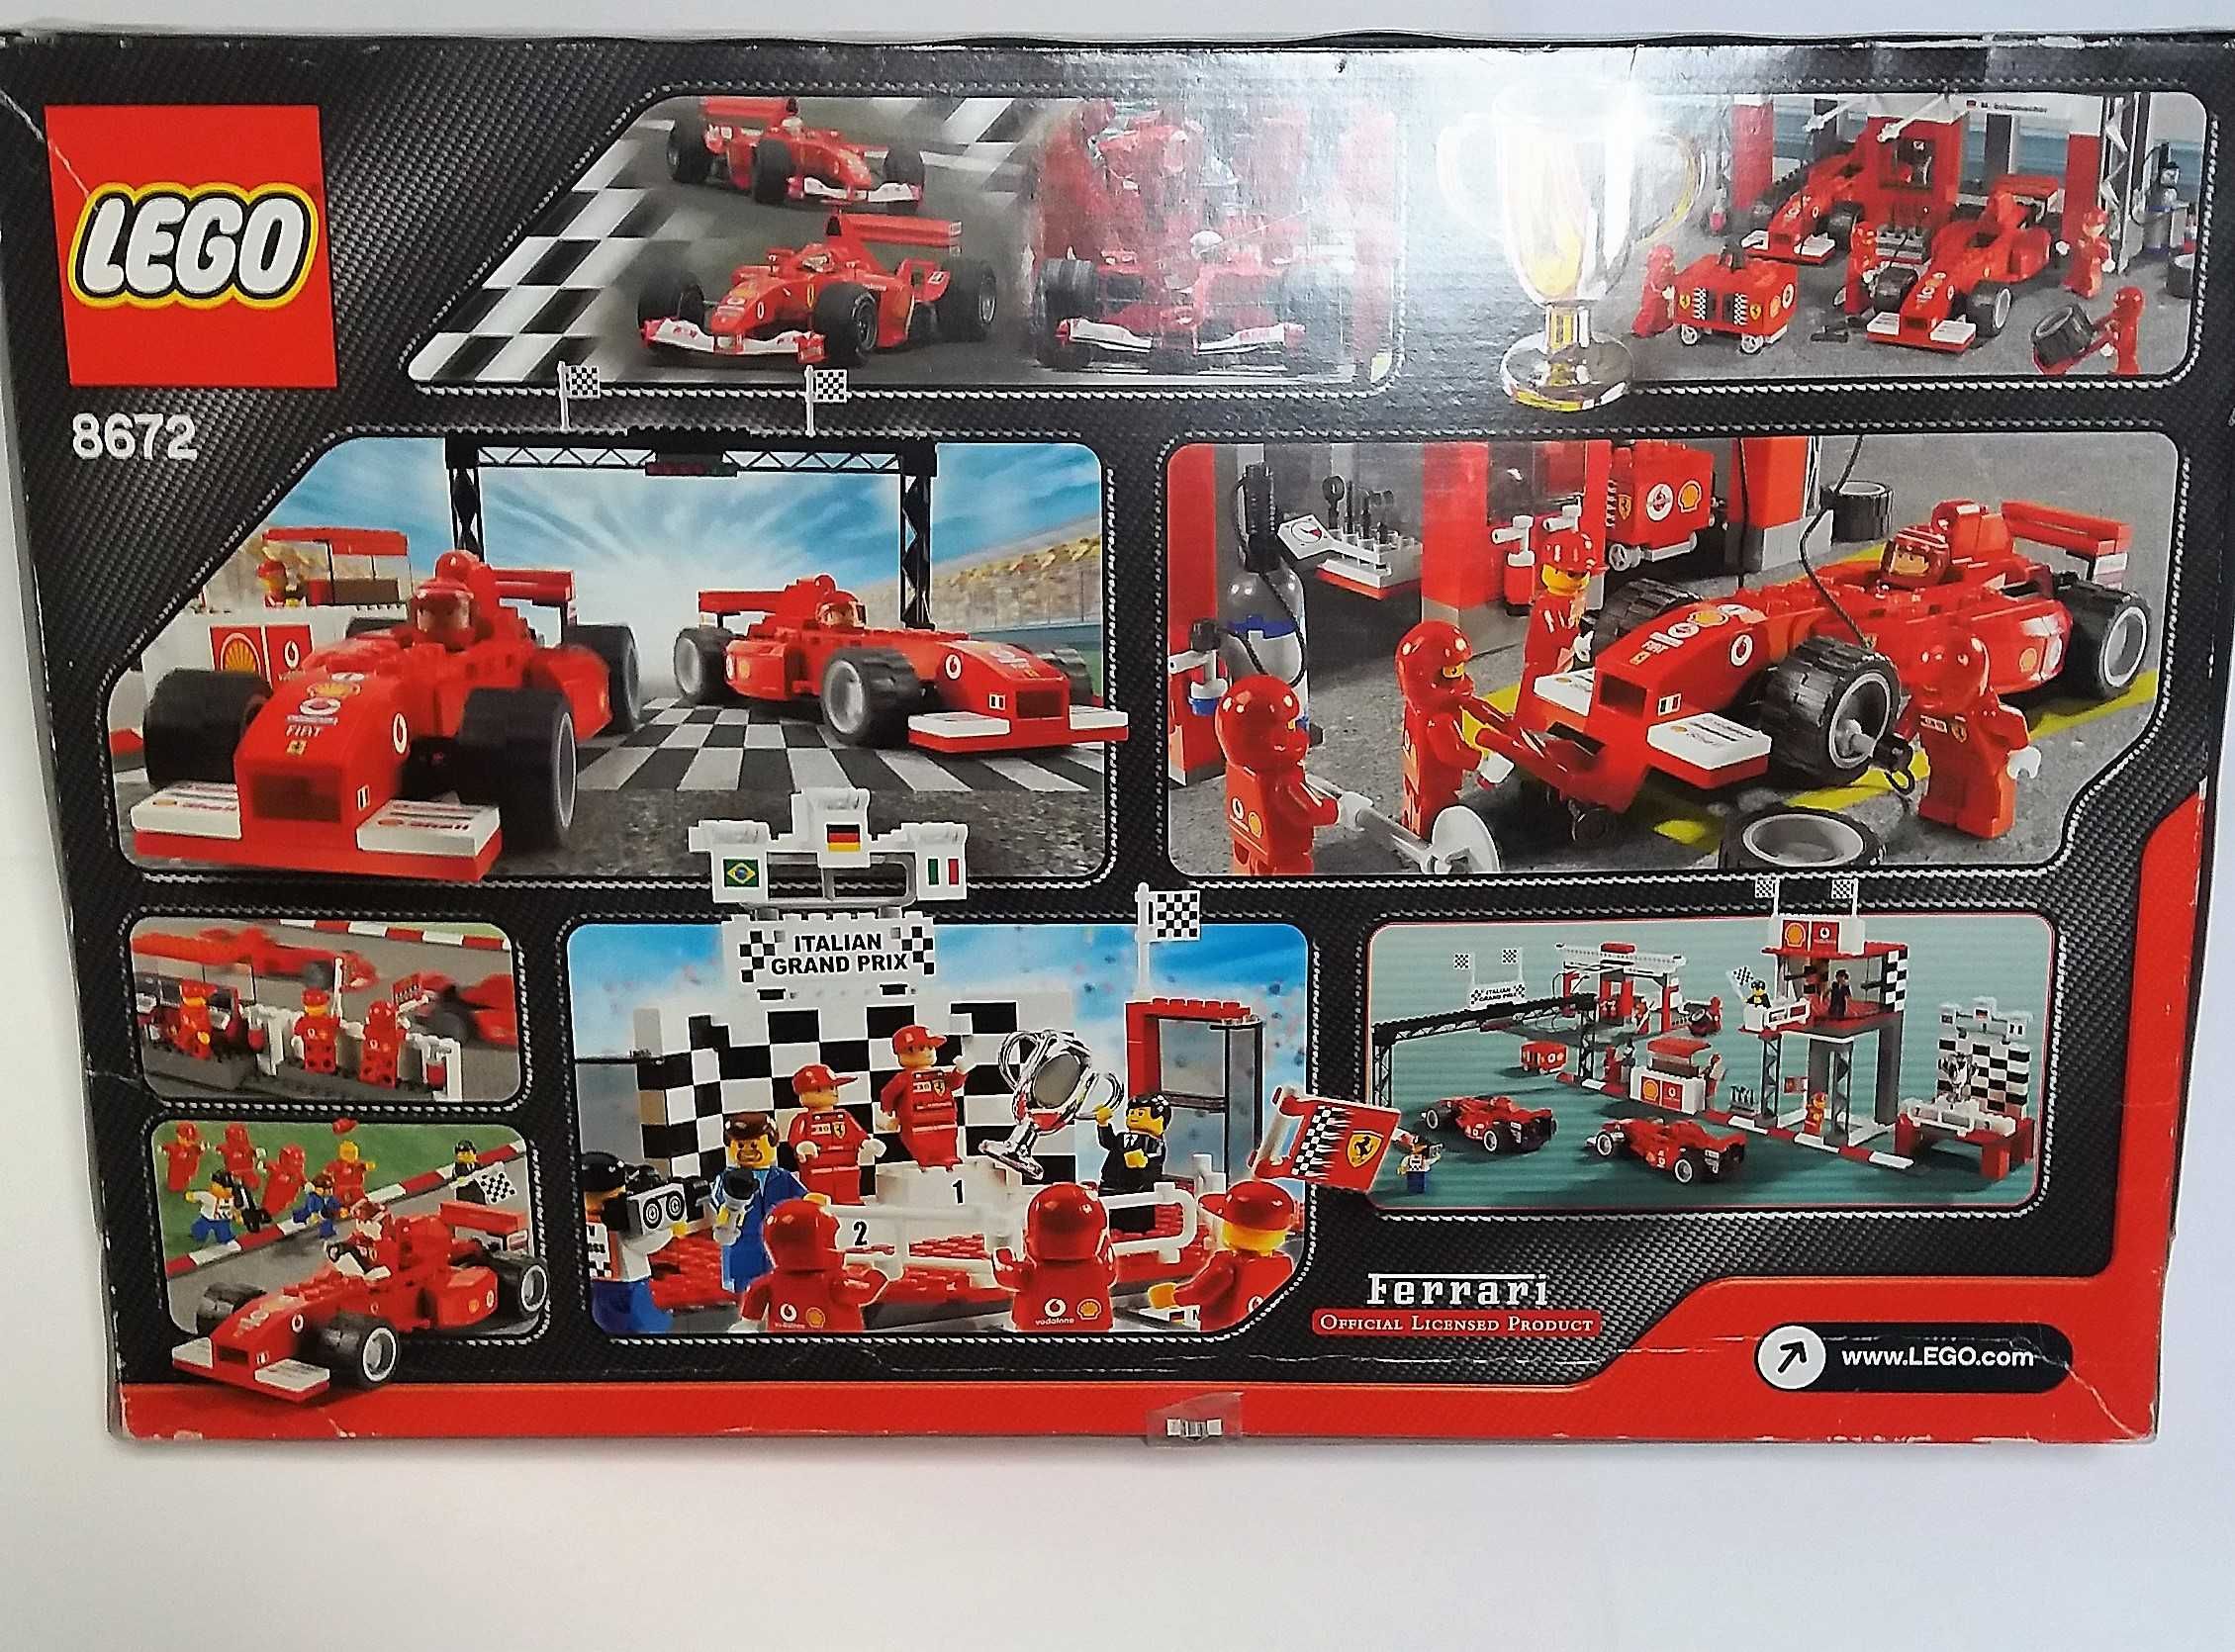 Lego FERRARI Schumacher